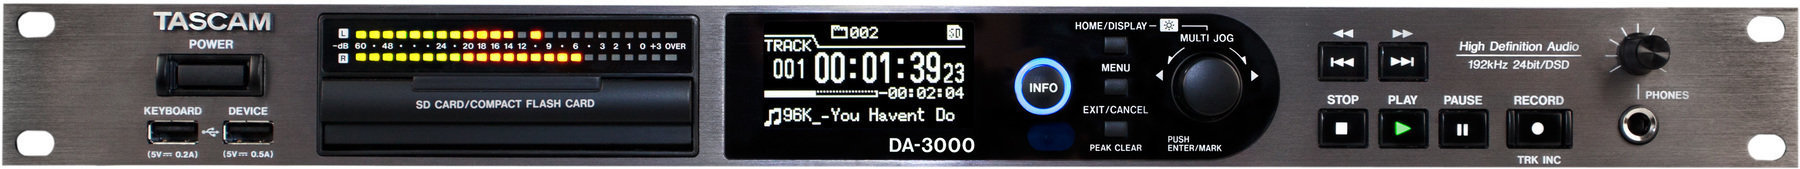 Gravador master/estéreo Tascam DA-3000